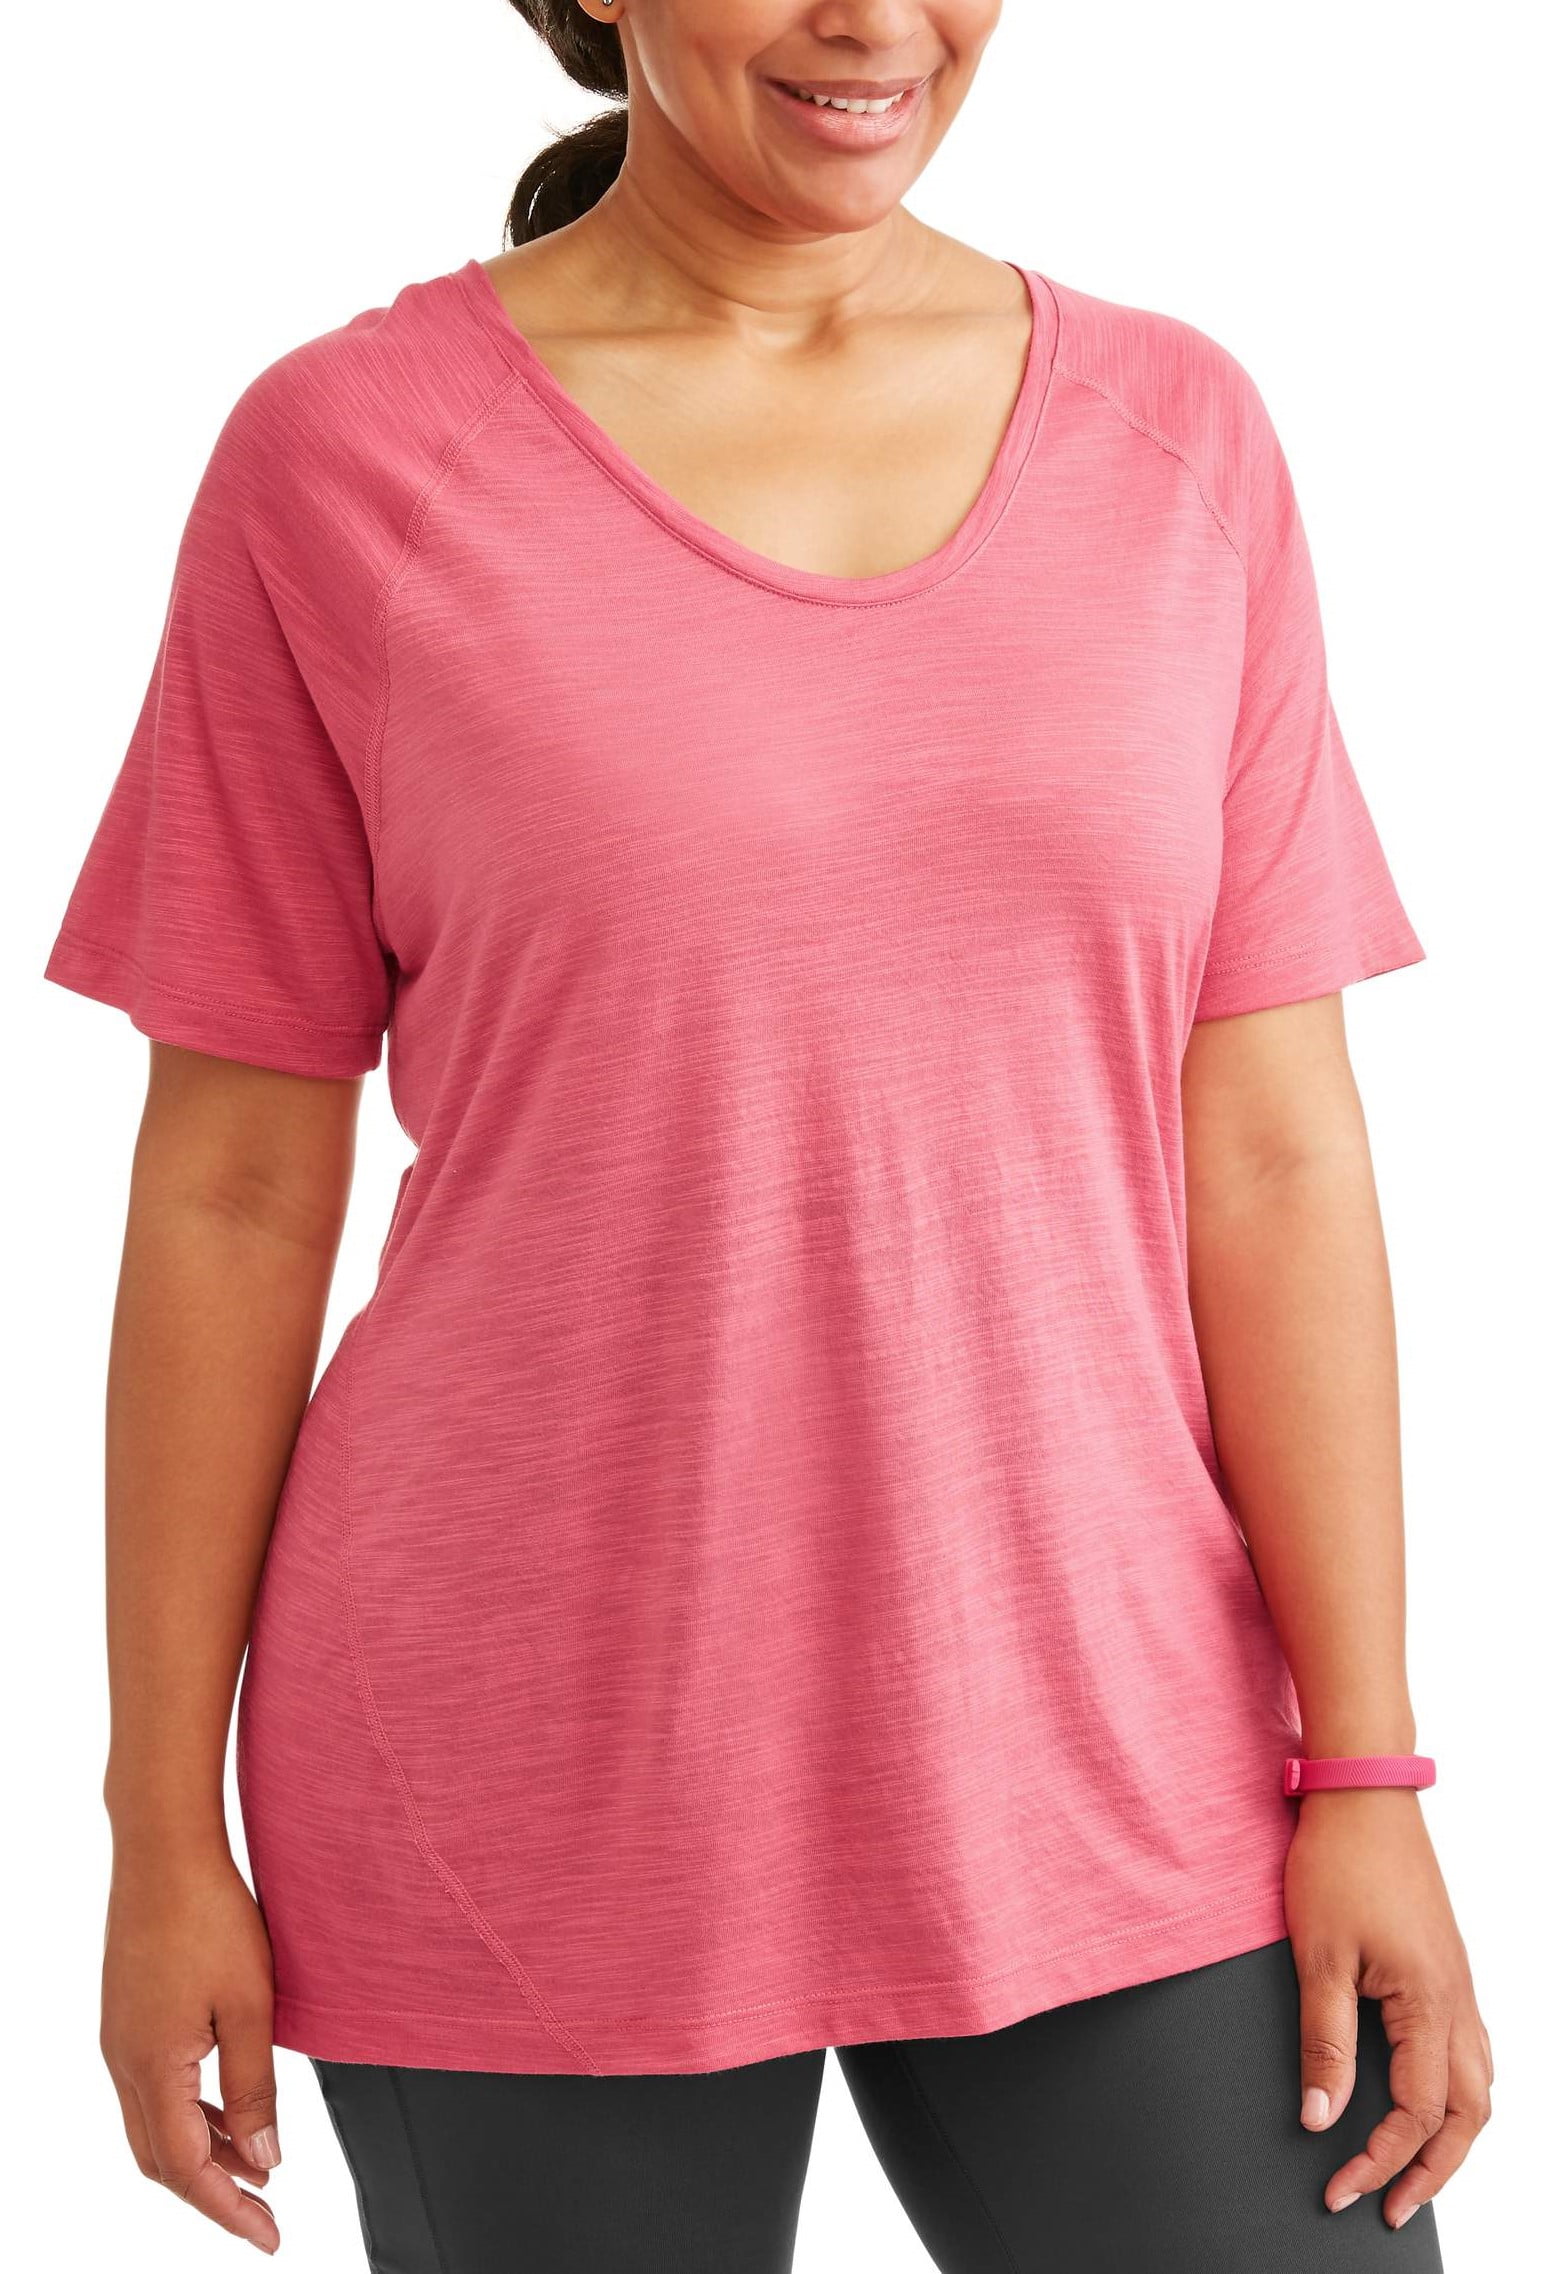 Terra & Sky Women's Plus Size Scoop Neck T-Shirt - Walmart.com